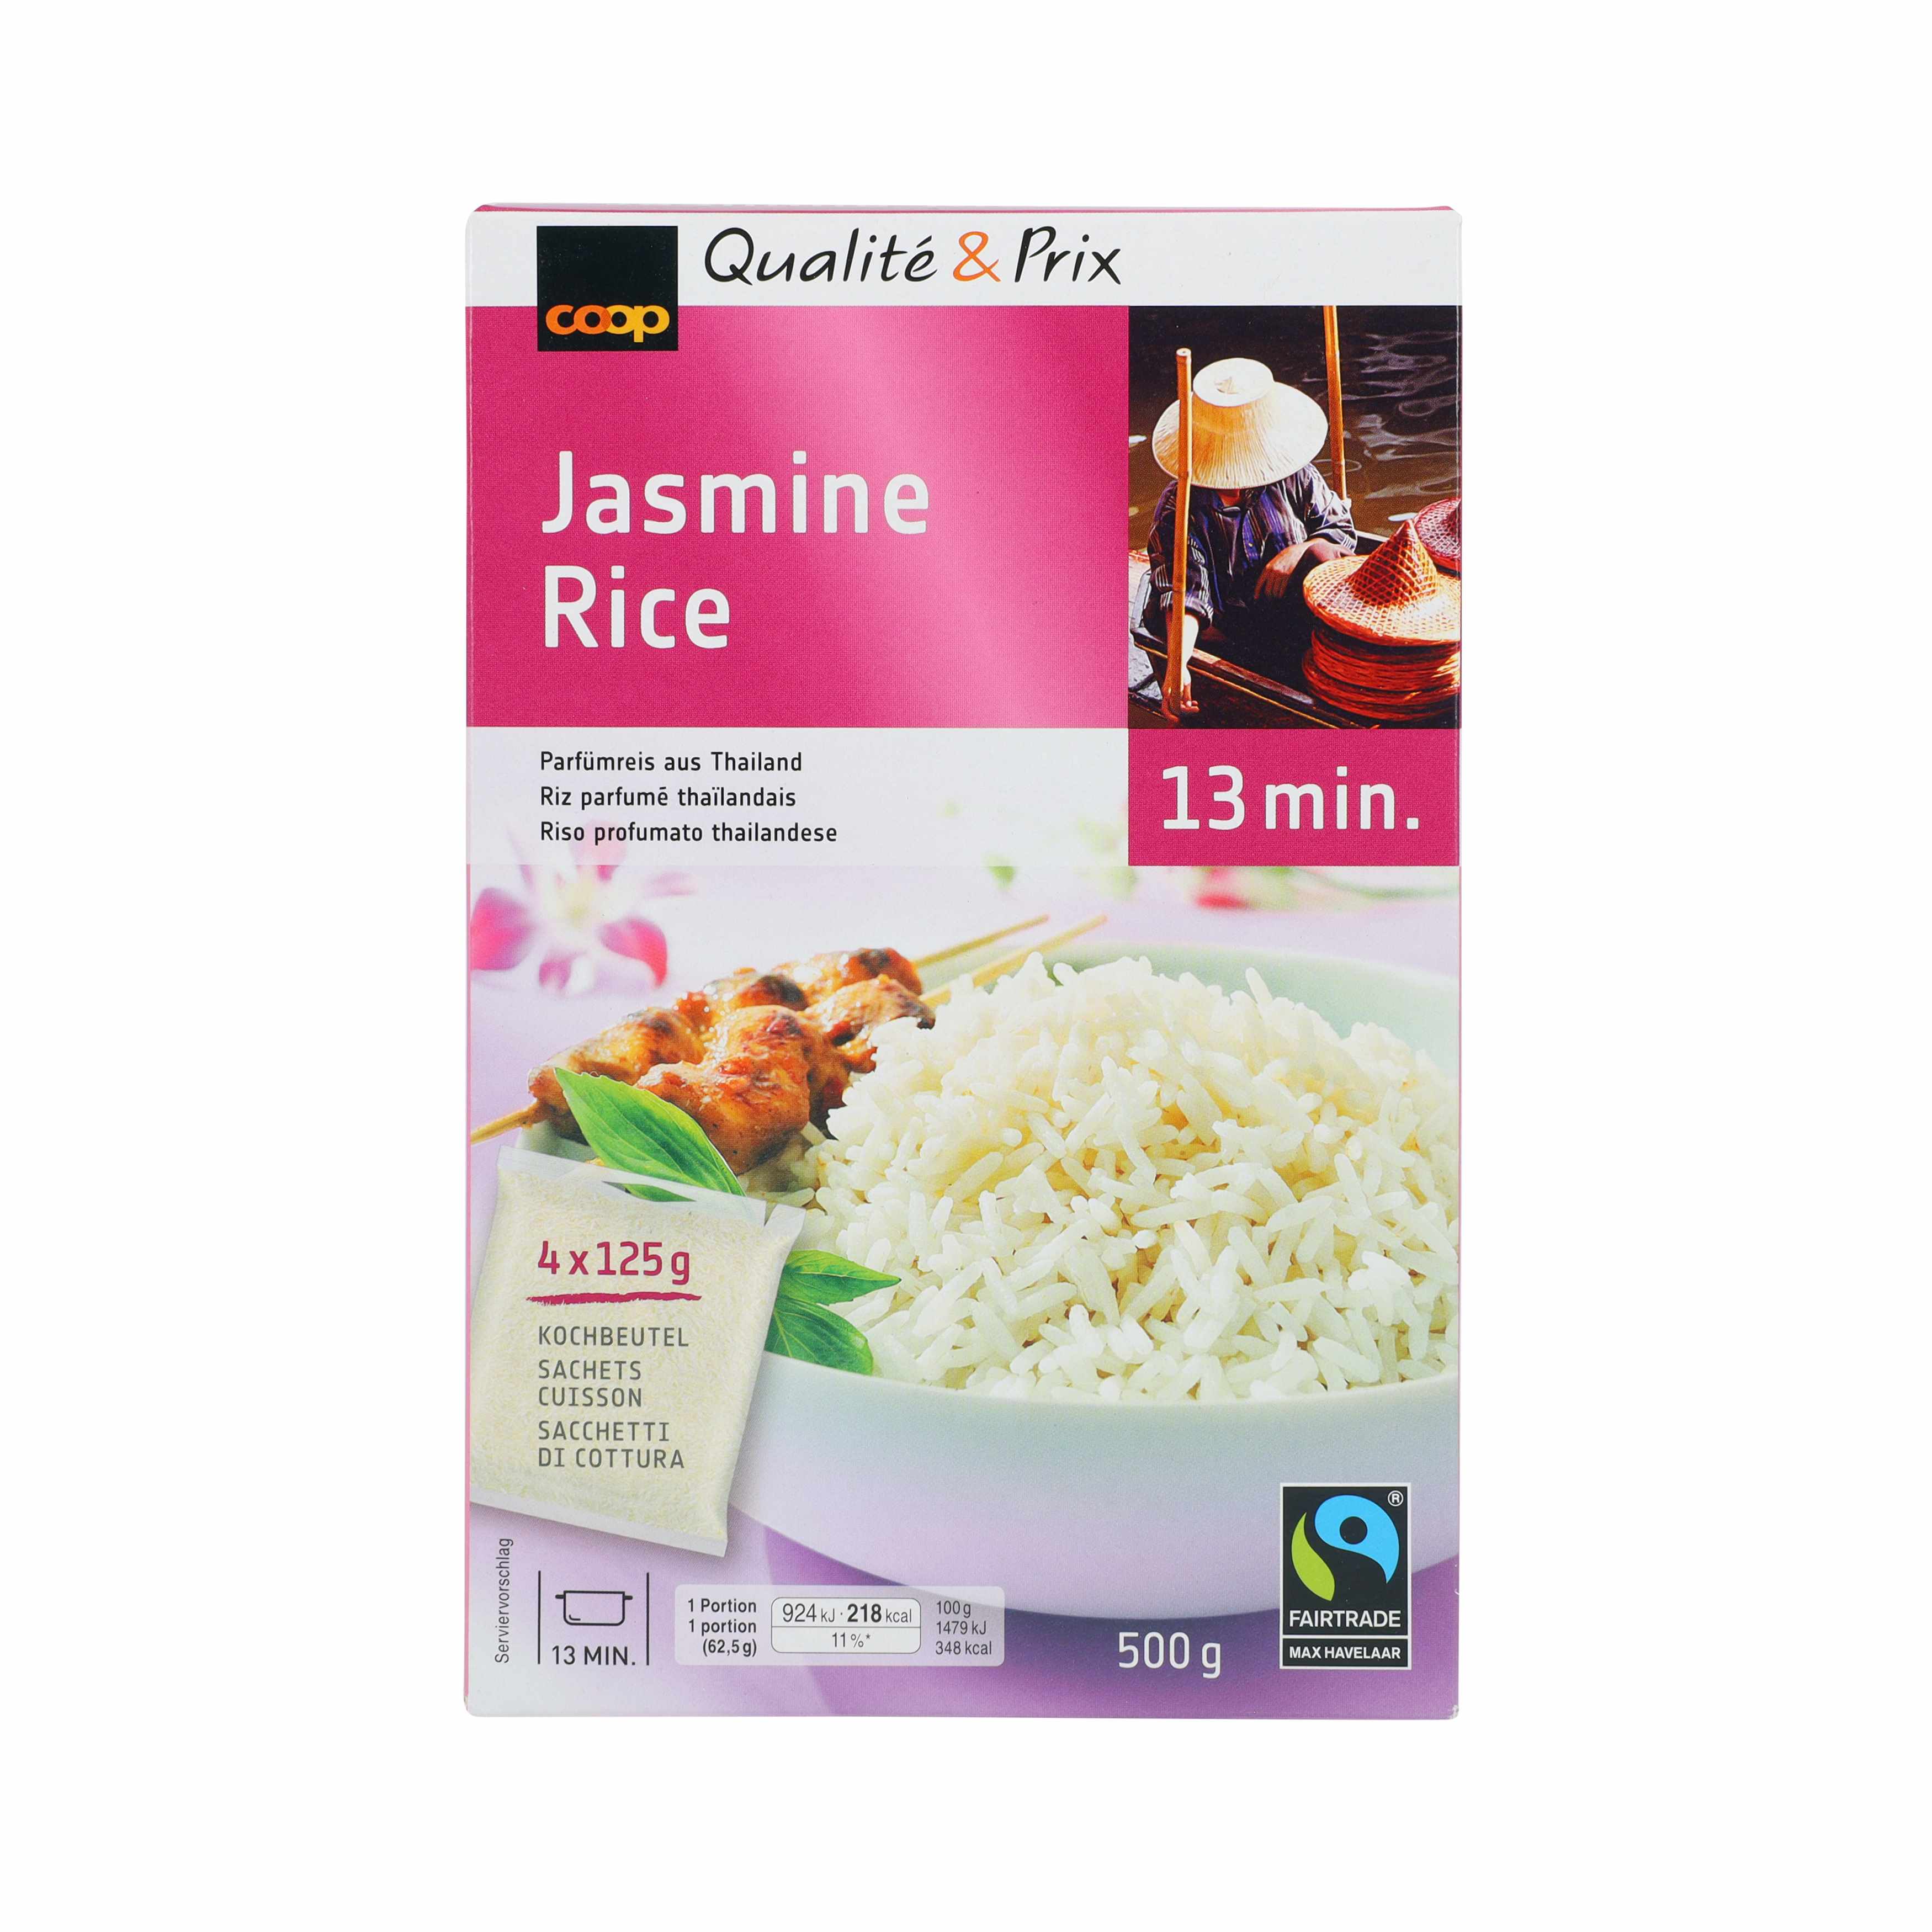 Jasmine Rice Kochbeutel 